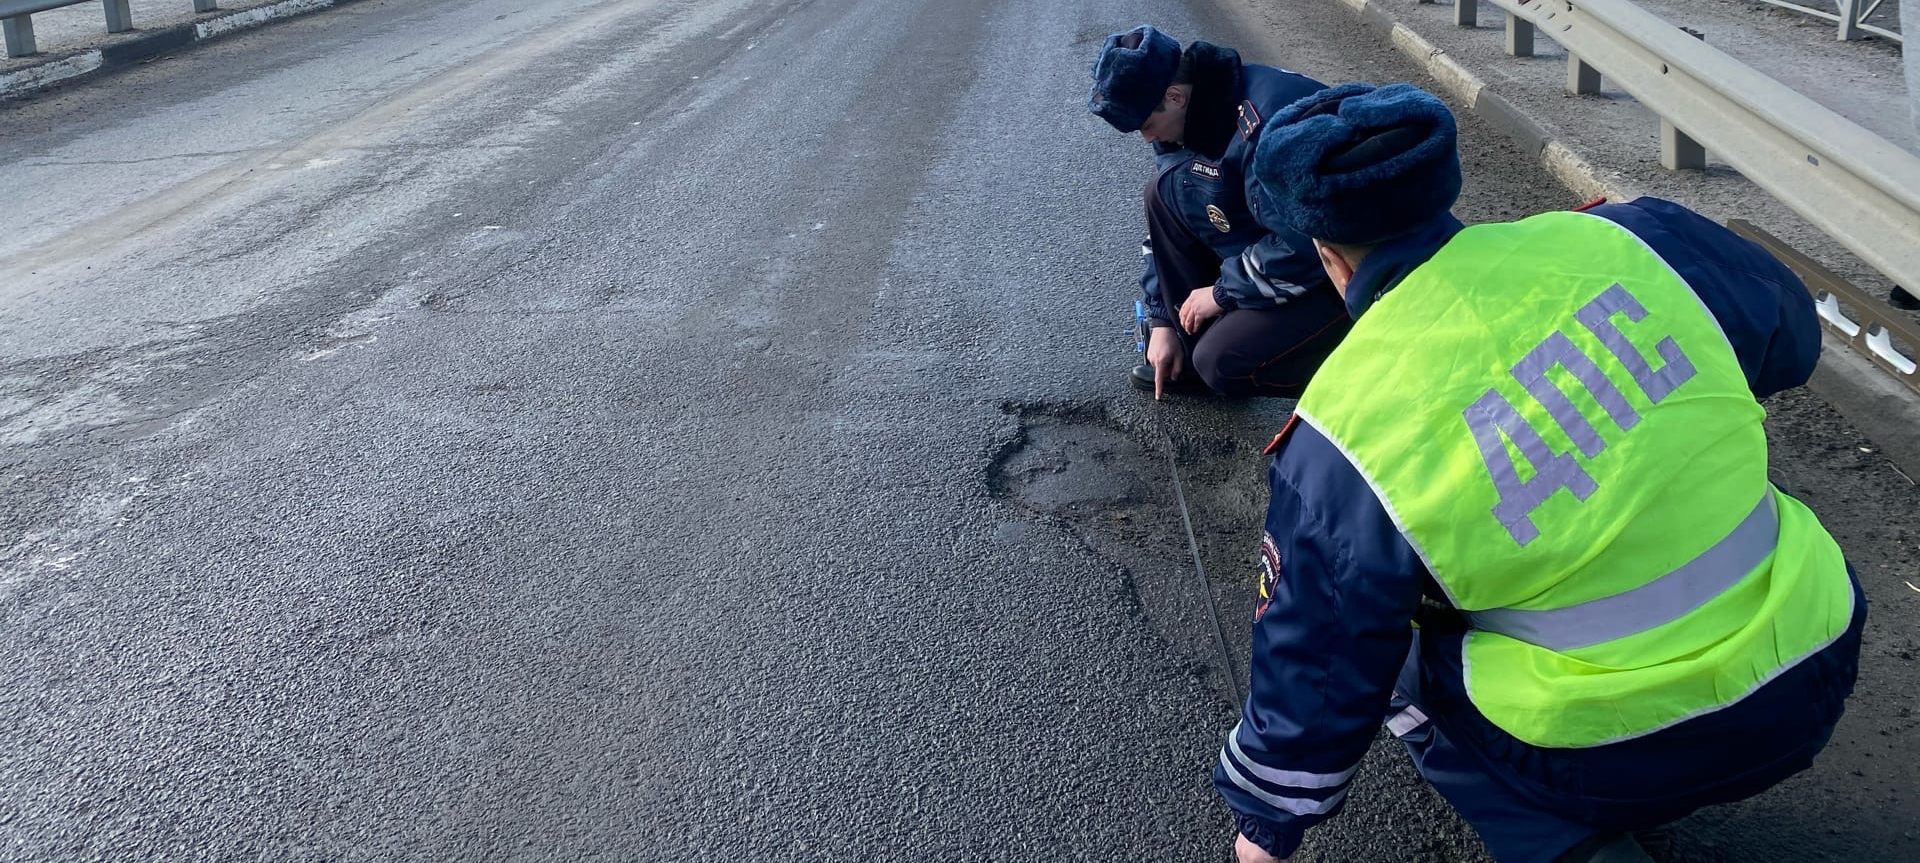 Власти Пудожского района Карелии ждет наказание за ямы на дороге 